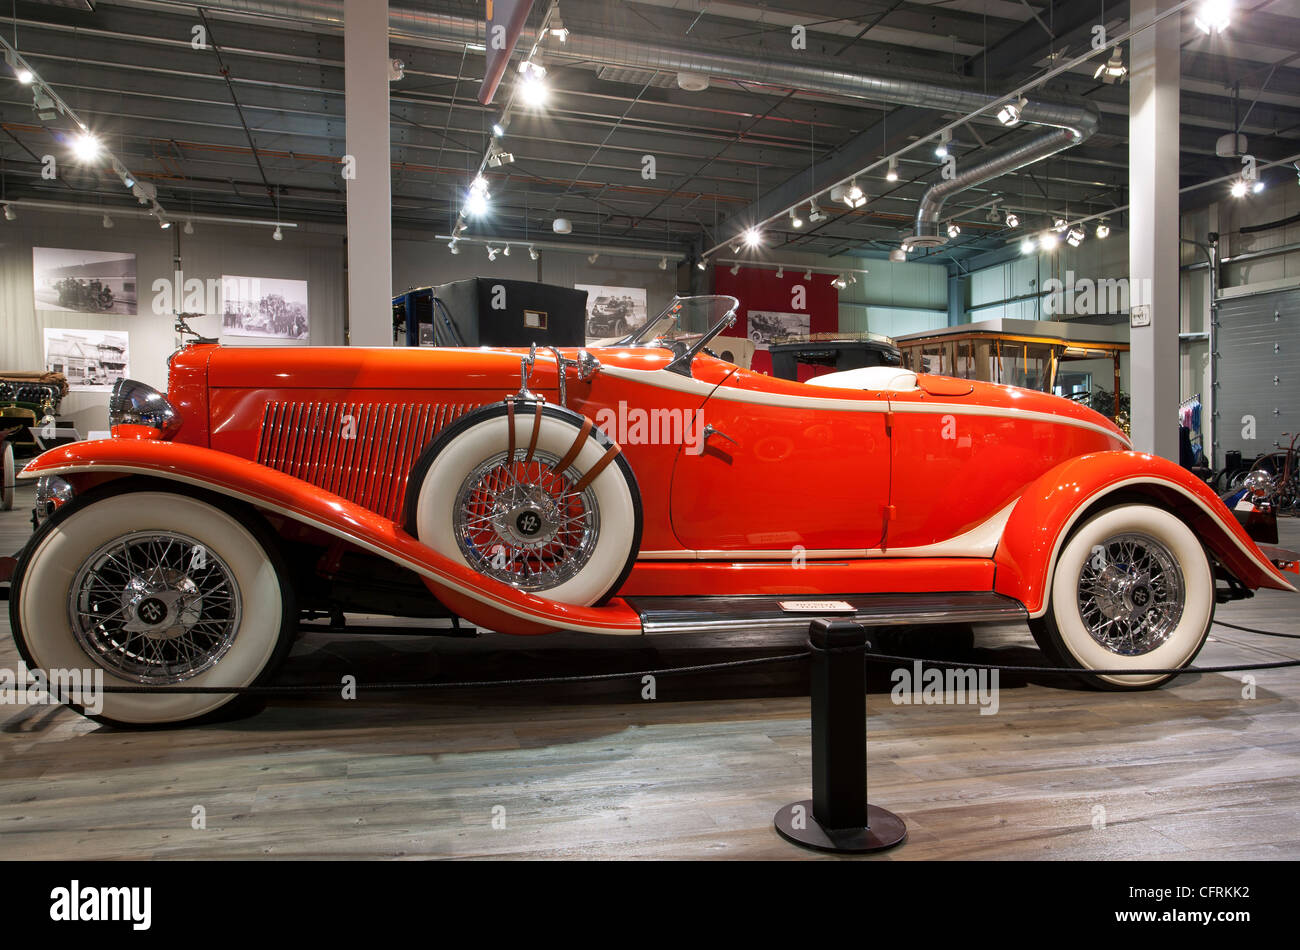 1933 Auburn model 12-161une coutume boattail speedster. Fountainhead Antique Auto Museum. Fairbanks. De l'Alaska. USA Banque D'Images